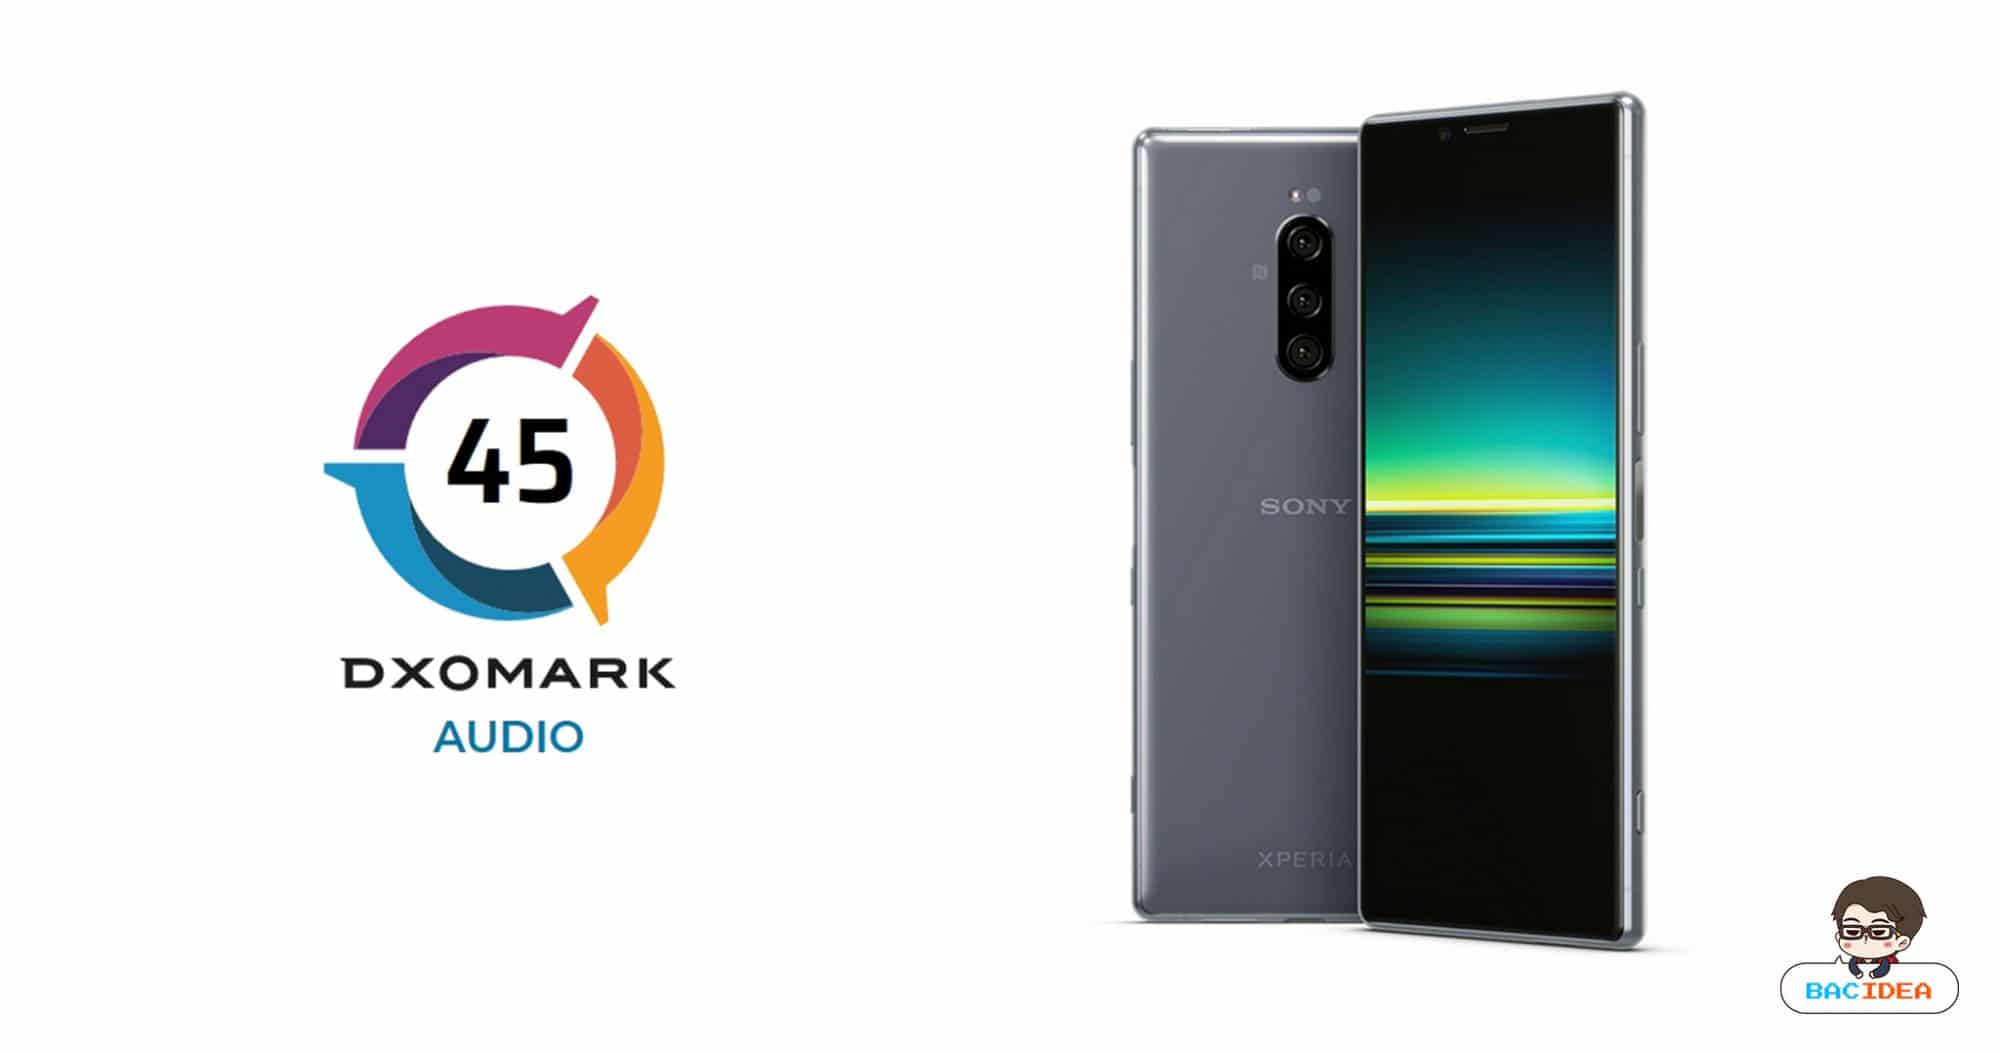 Sony Xperia 1 เป็นสมาร์ทโฟนชุดแรกที่ได้ทดสอบ DxOMark Audio ได้ 45 คะแนนรั้งท้ายตาราง 1